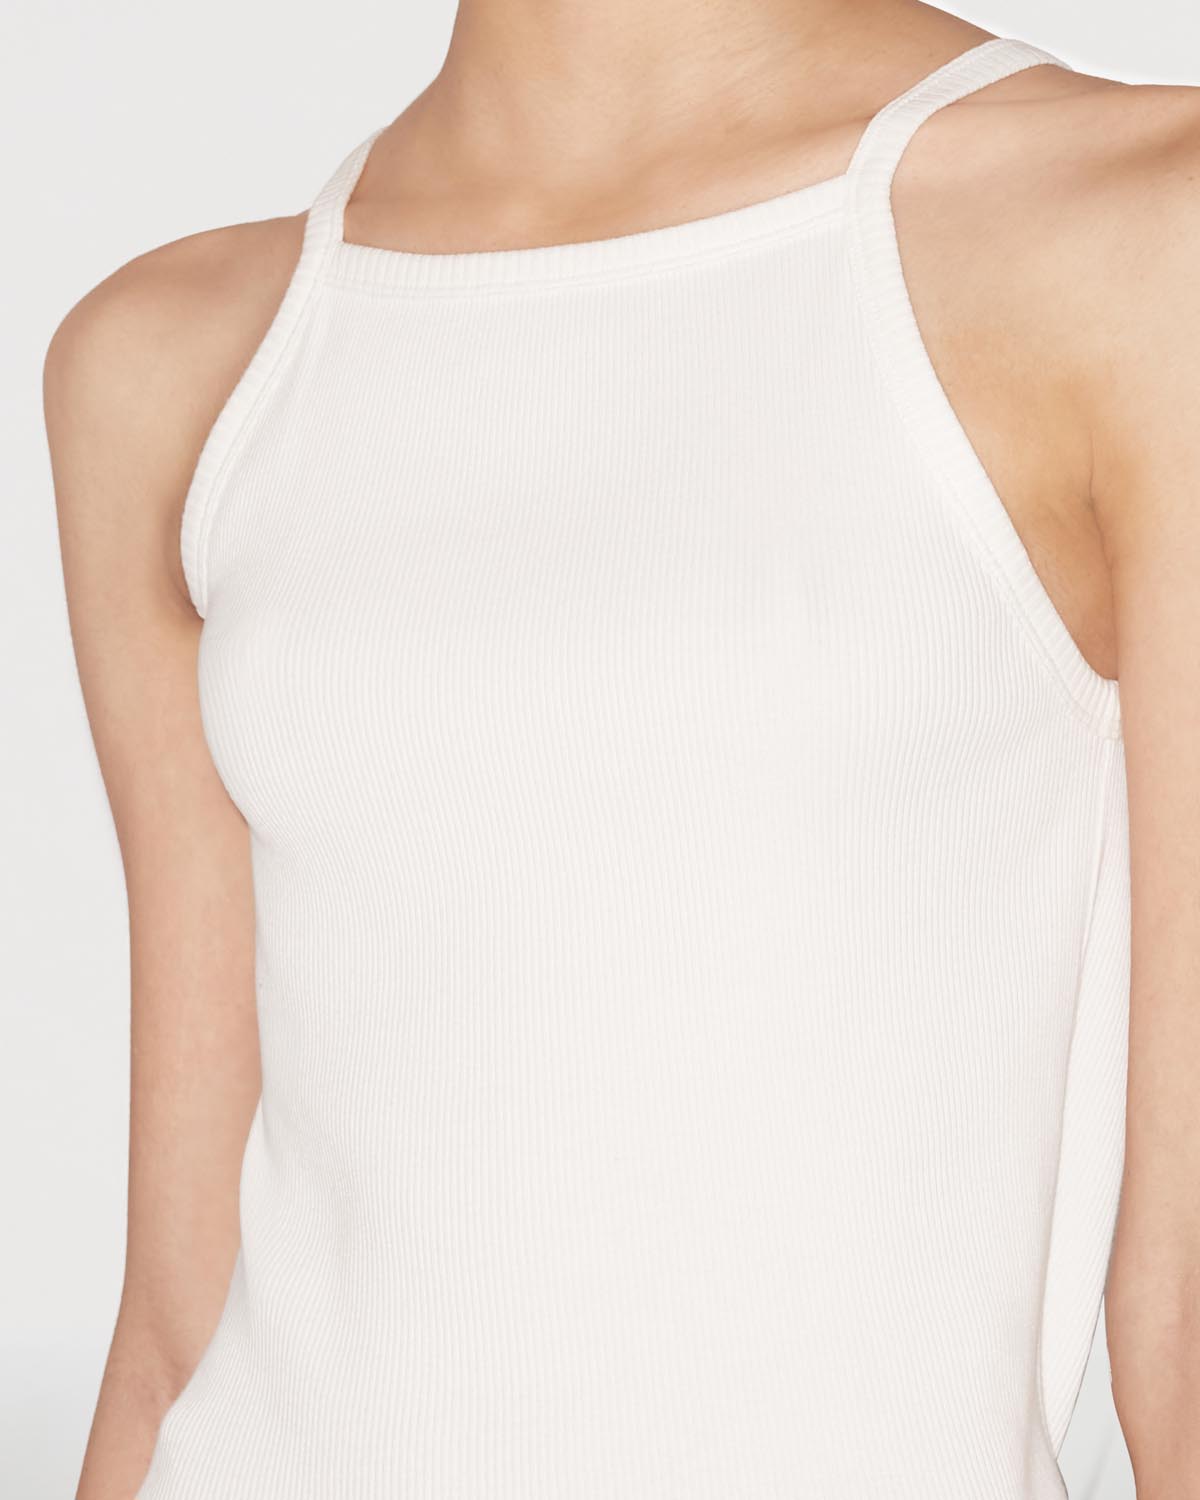 Camiseta tirza Woman Blanco 8